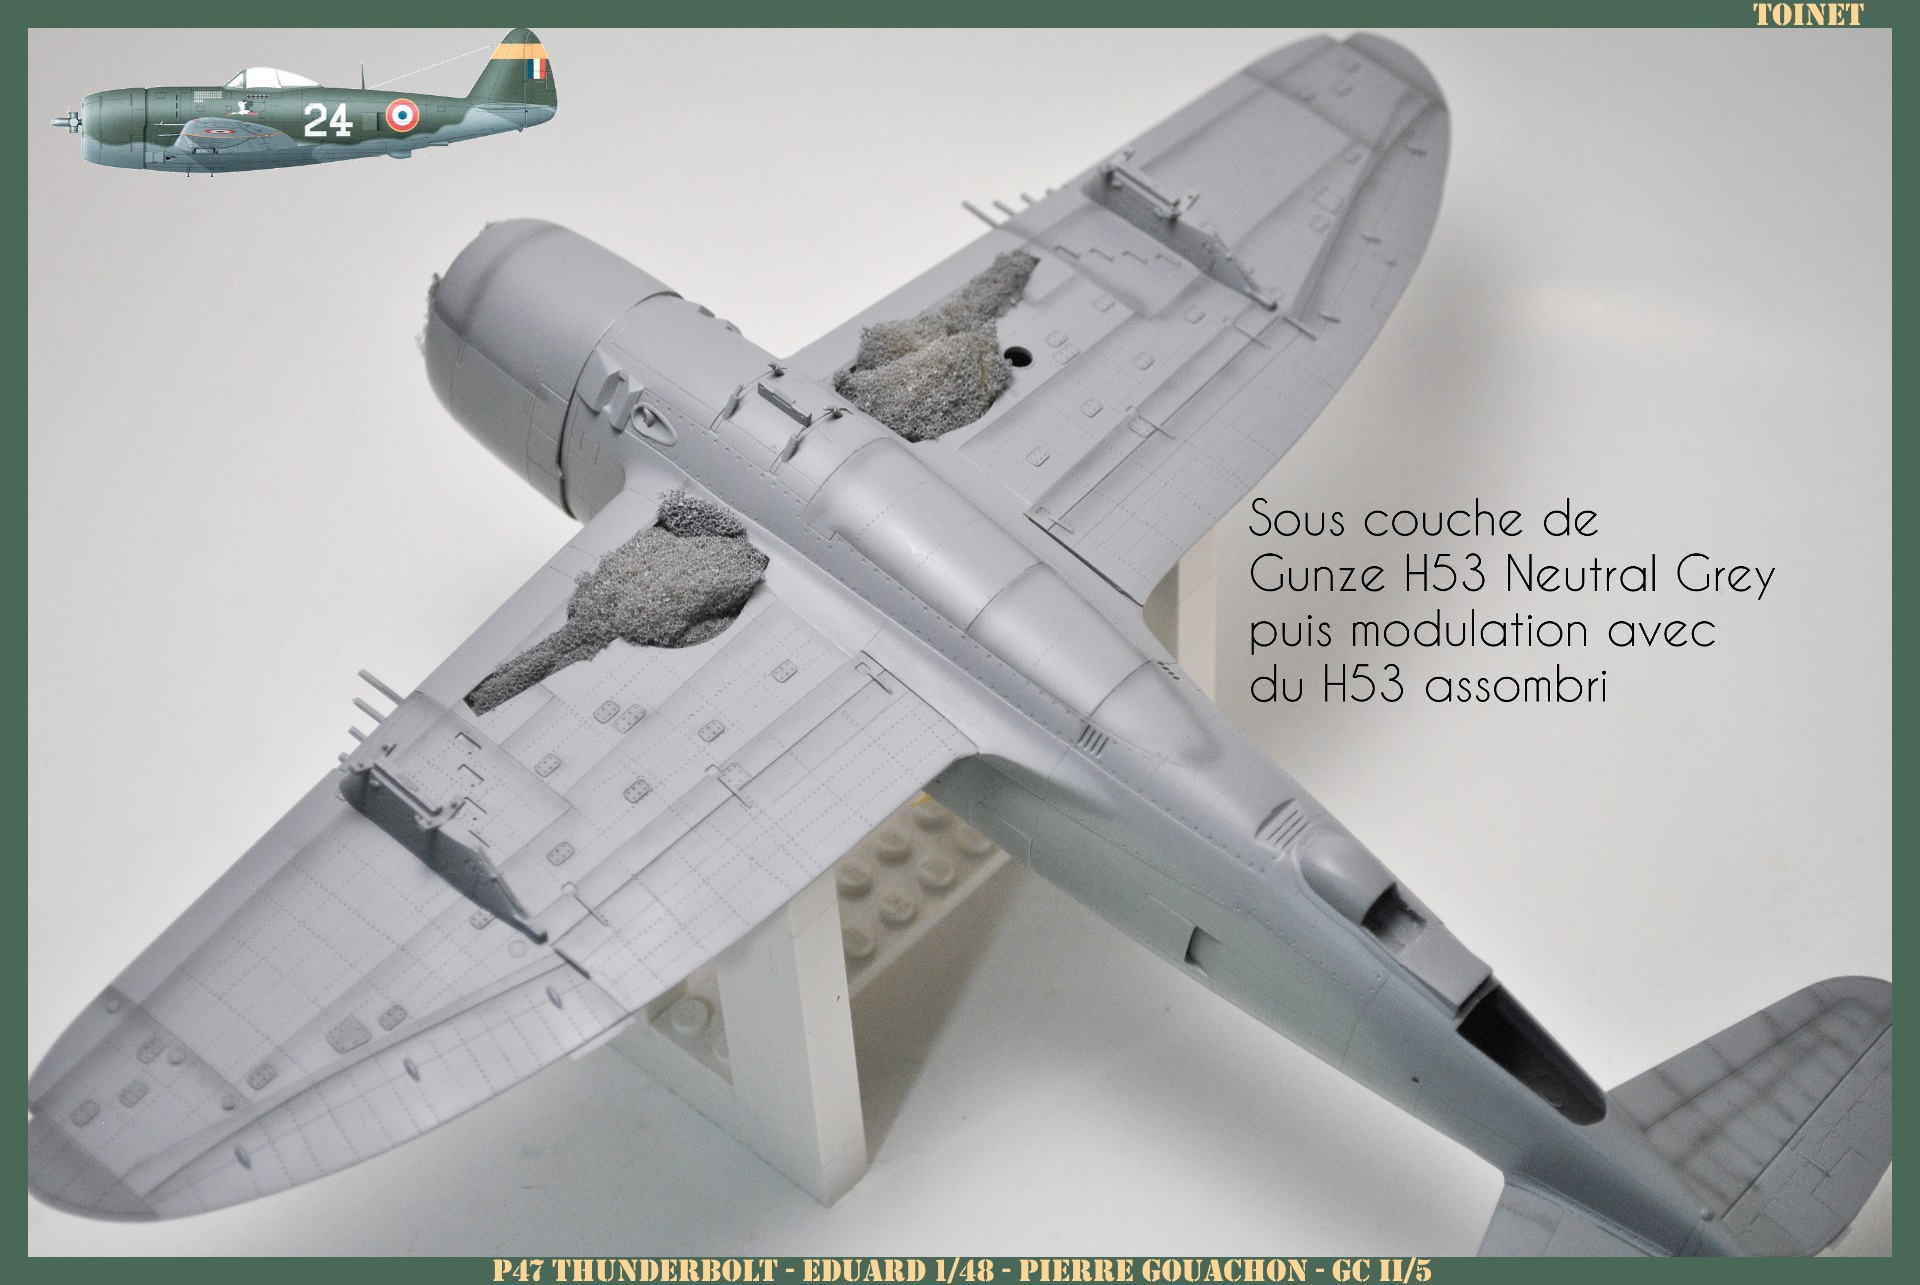 P-47 Français - Eduard 1/48 - Pierre Gouachon Noireault - FINI !! - Page 4 17050606142122113415023415